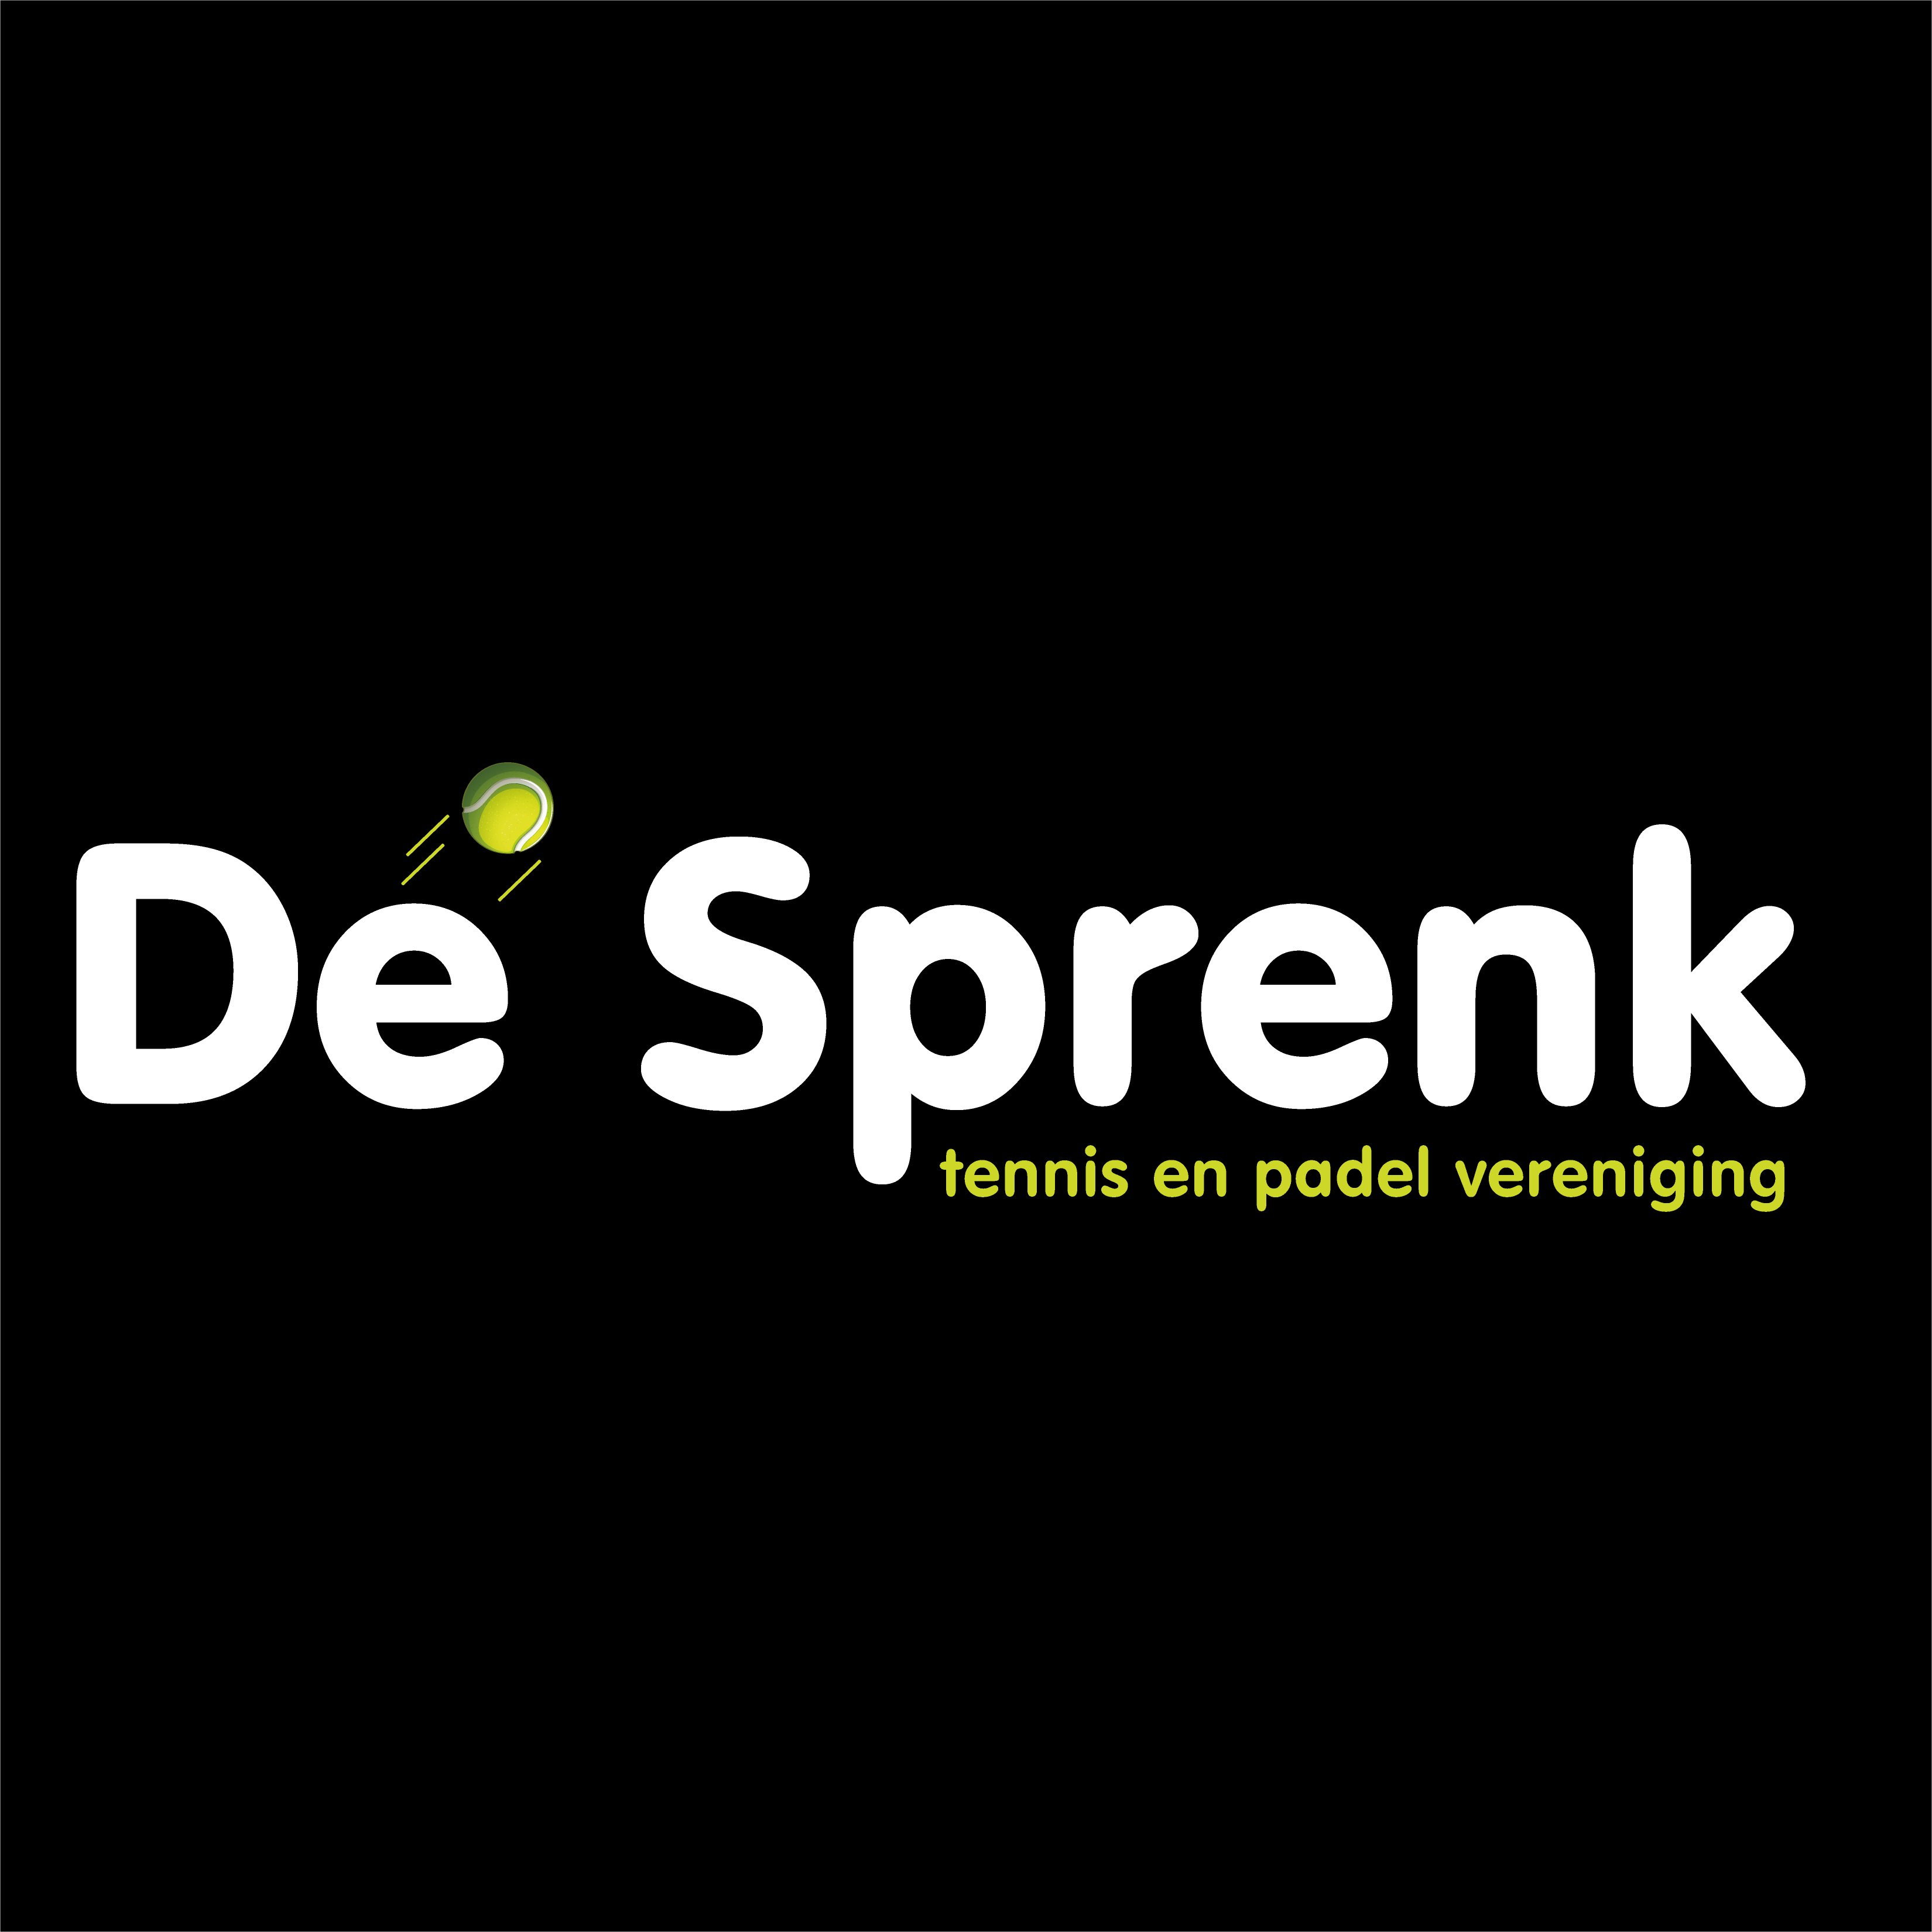 Profile image of venue Tennis en padelvereniging De Sprenk